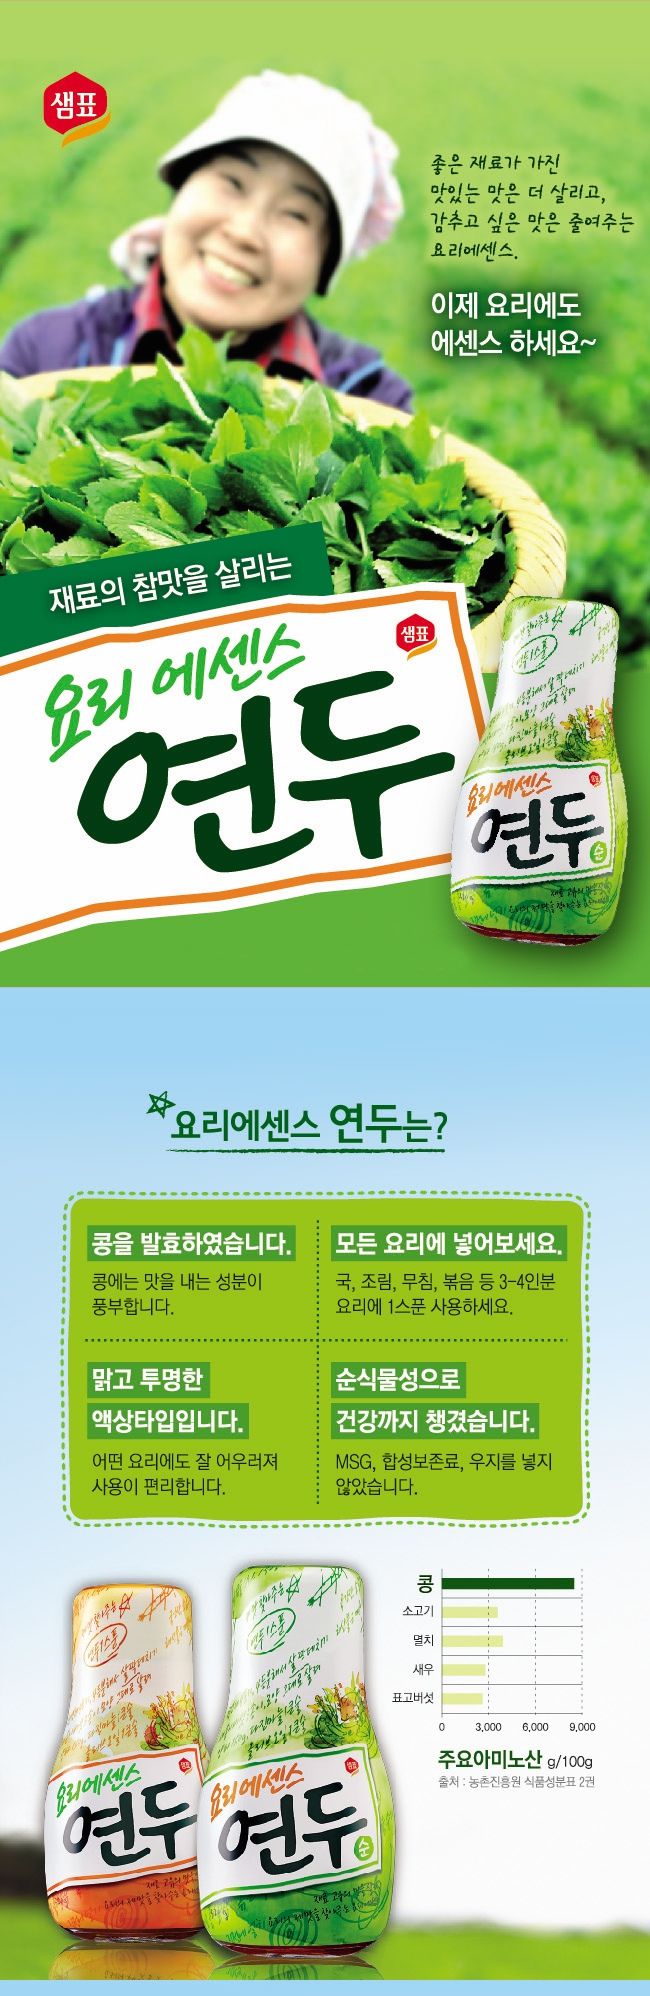 韓國食品-[Sempio] Yondu (Mild flavour) 320g